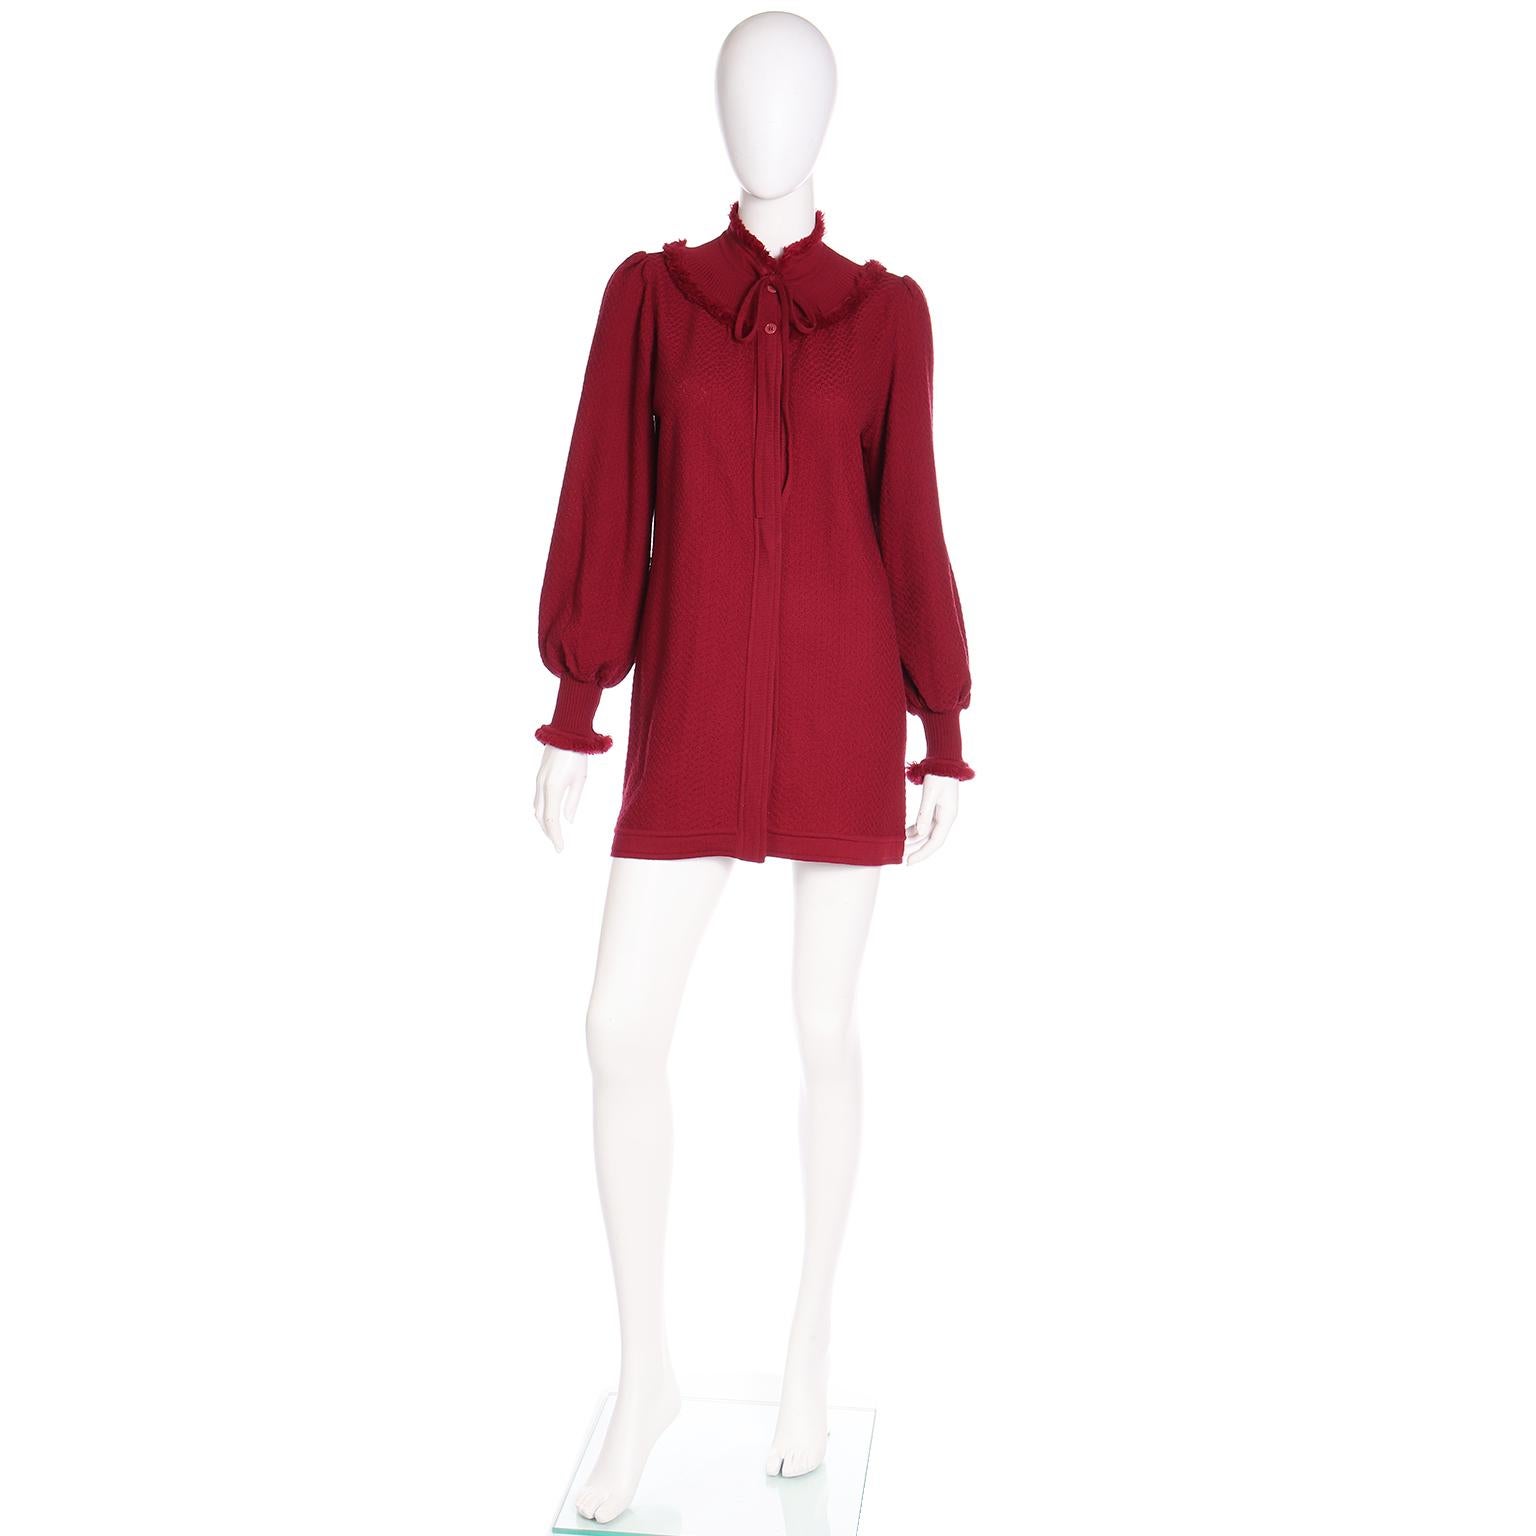 Dies ist eine große Vintage 1970's YSL Burgund rot Wolle stricken Pullover mit einem Fransen getrimmt Passe und Fransen an den Manschetten. Das Kleid wird im Nacken gebunden und ist oben mit zwei Knöpfen zu schließen. Die Schultern sind so